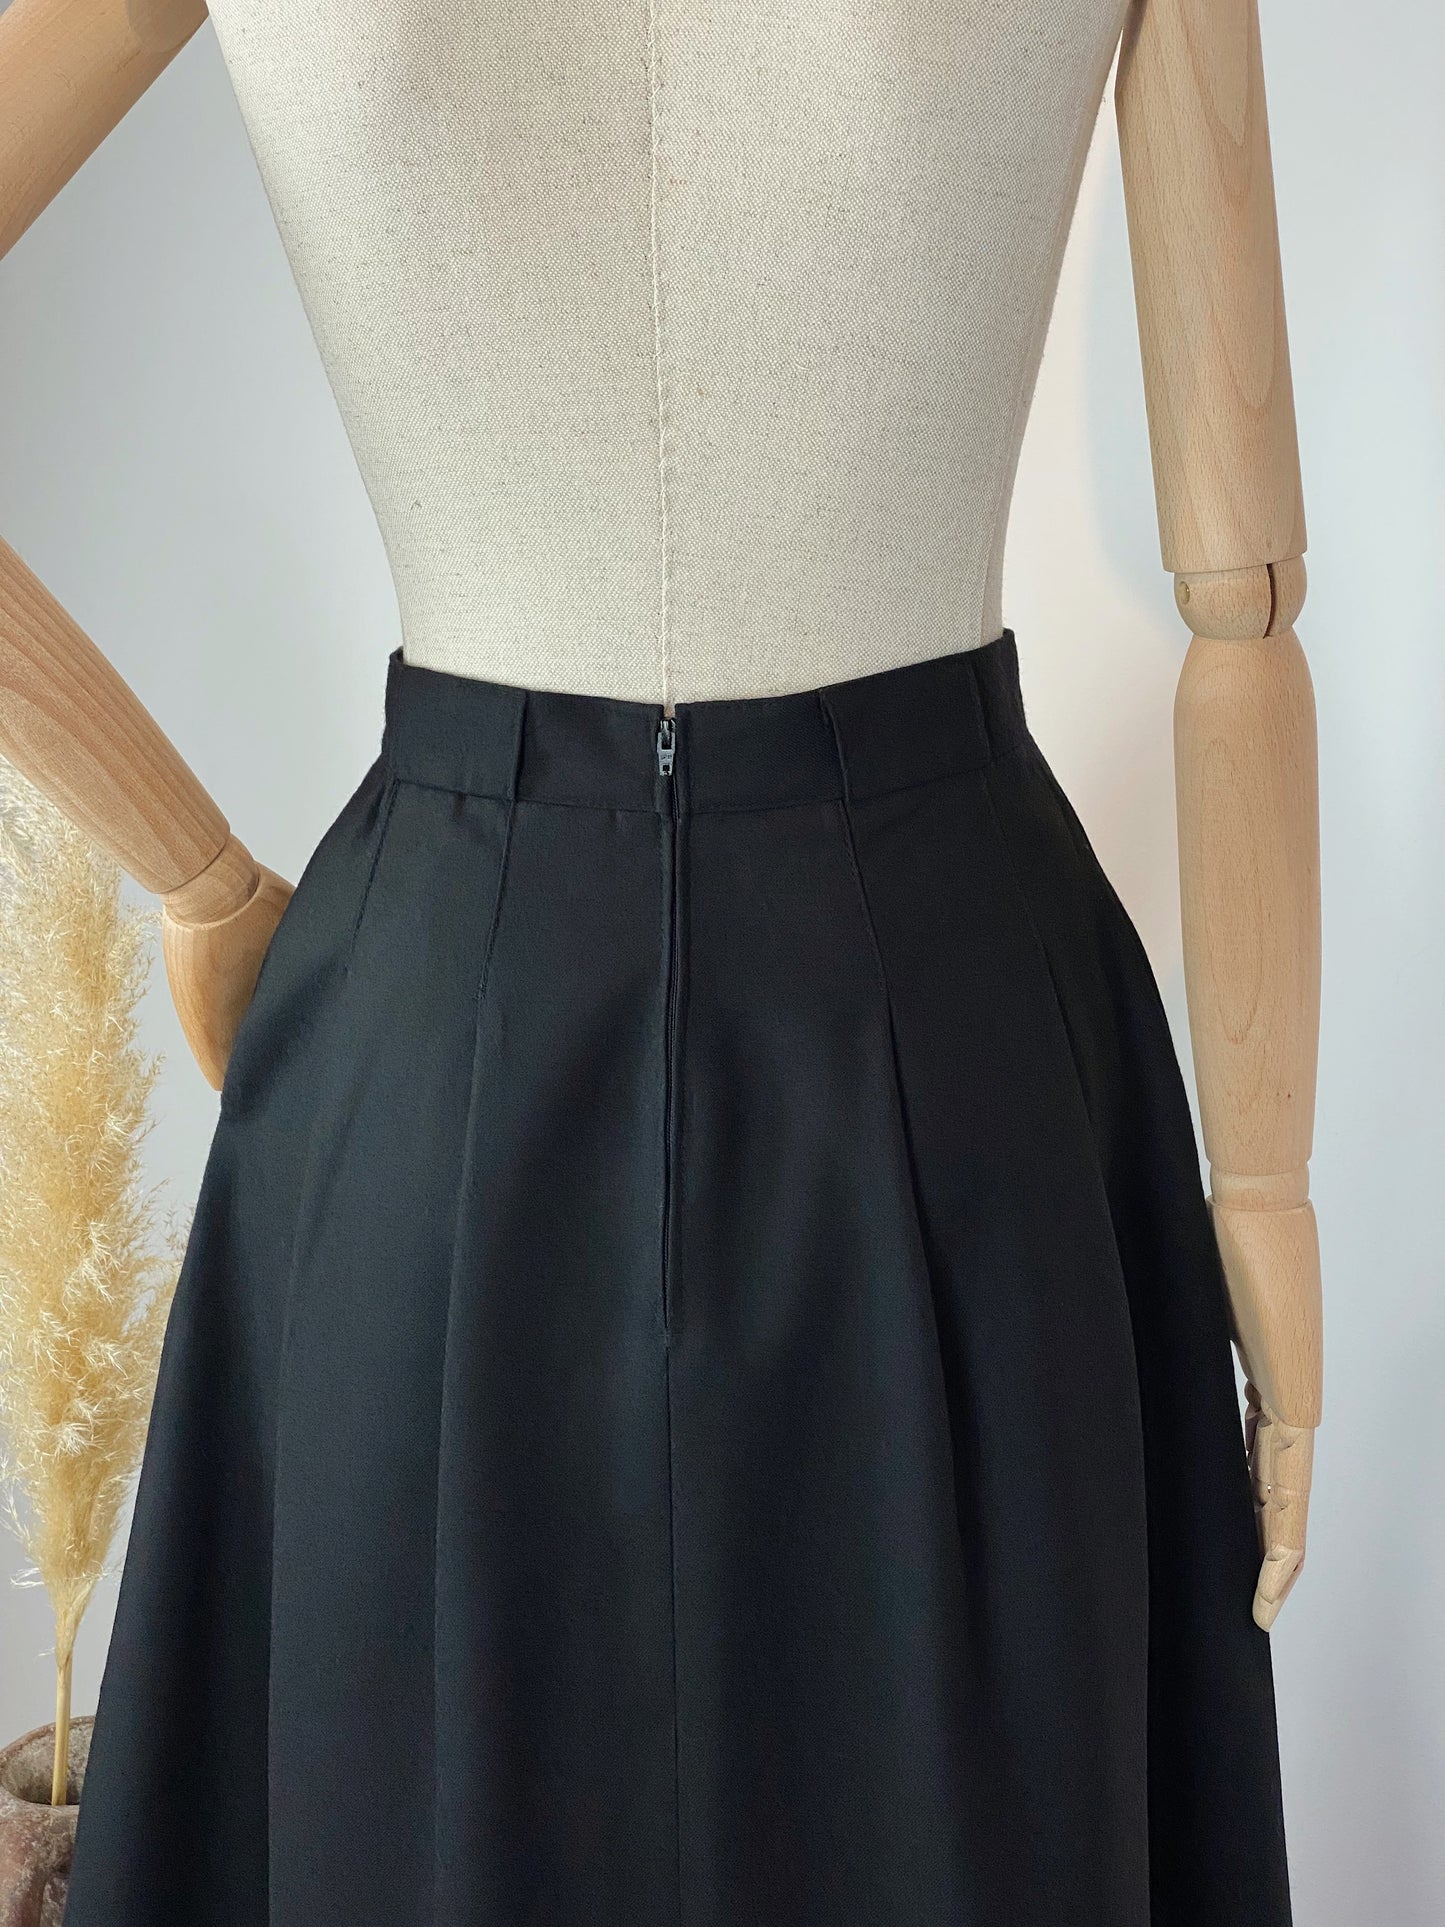 Vintage Black Woollen Skirt